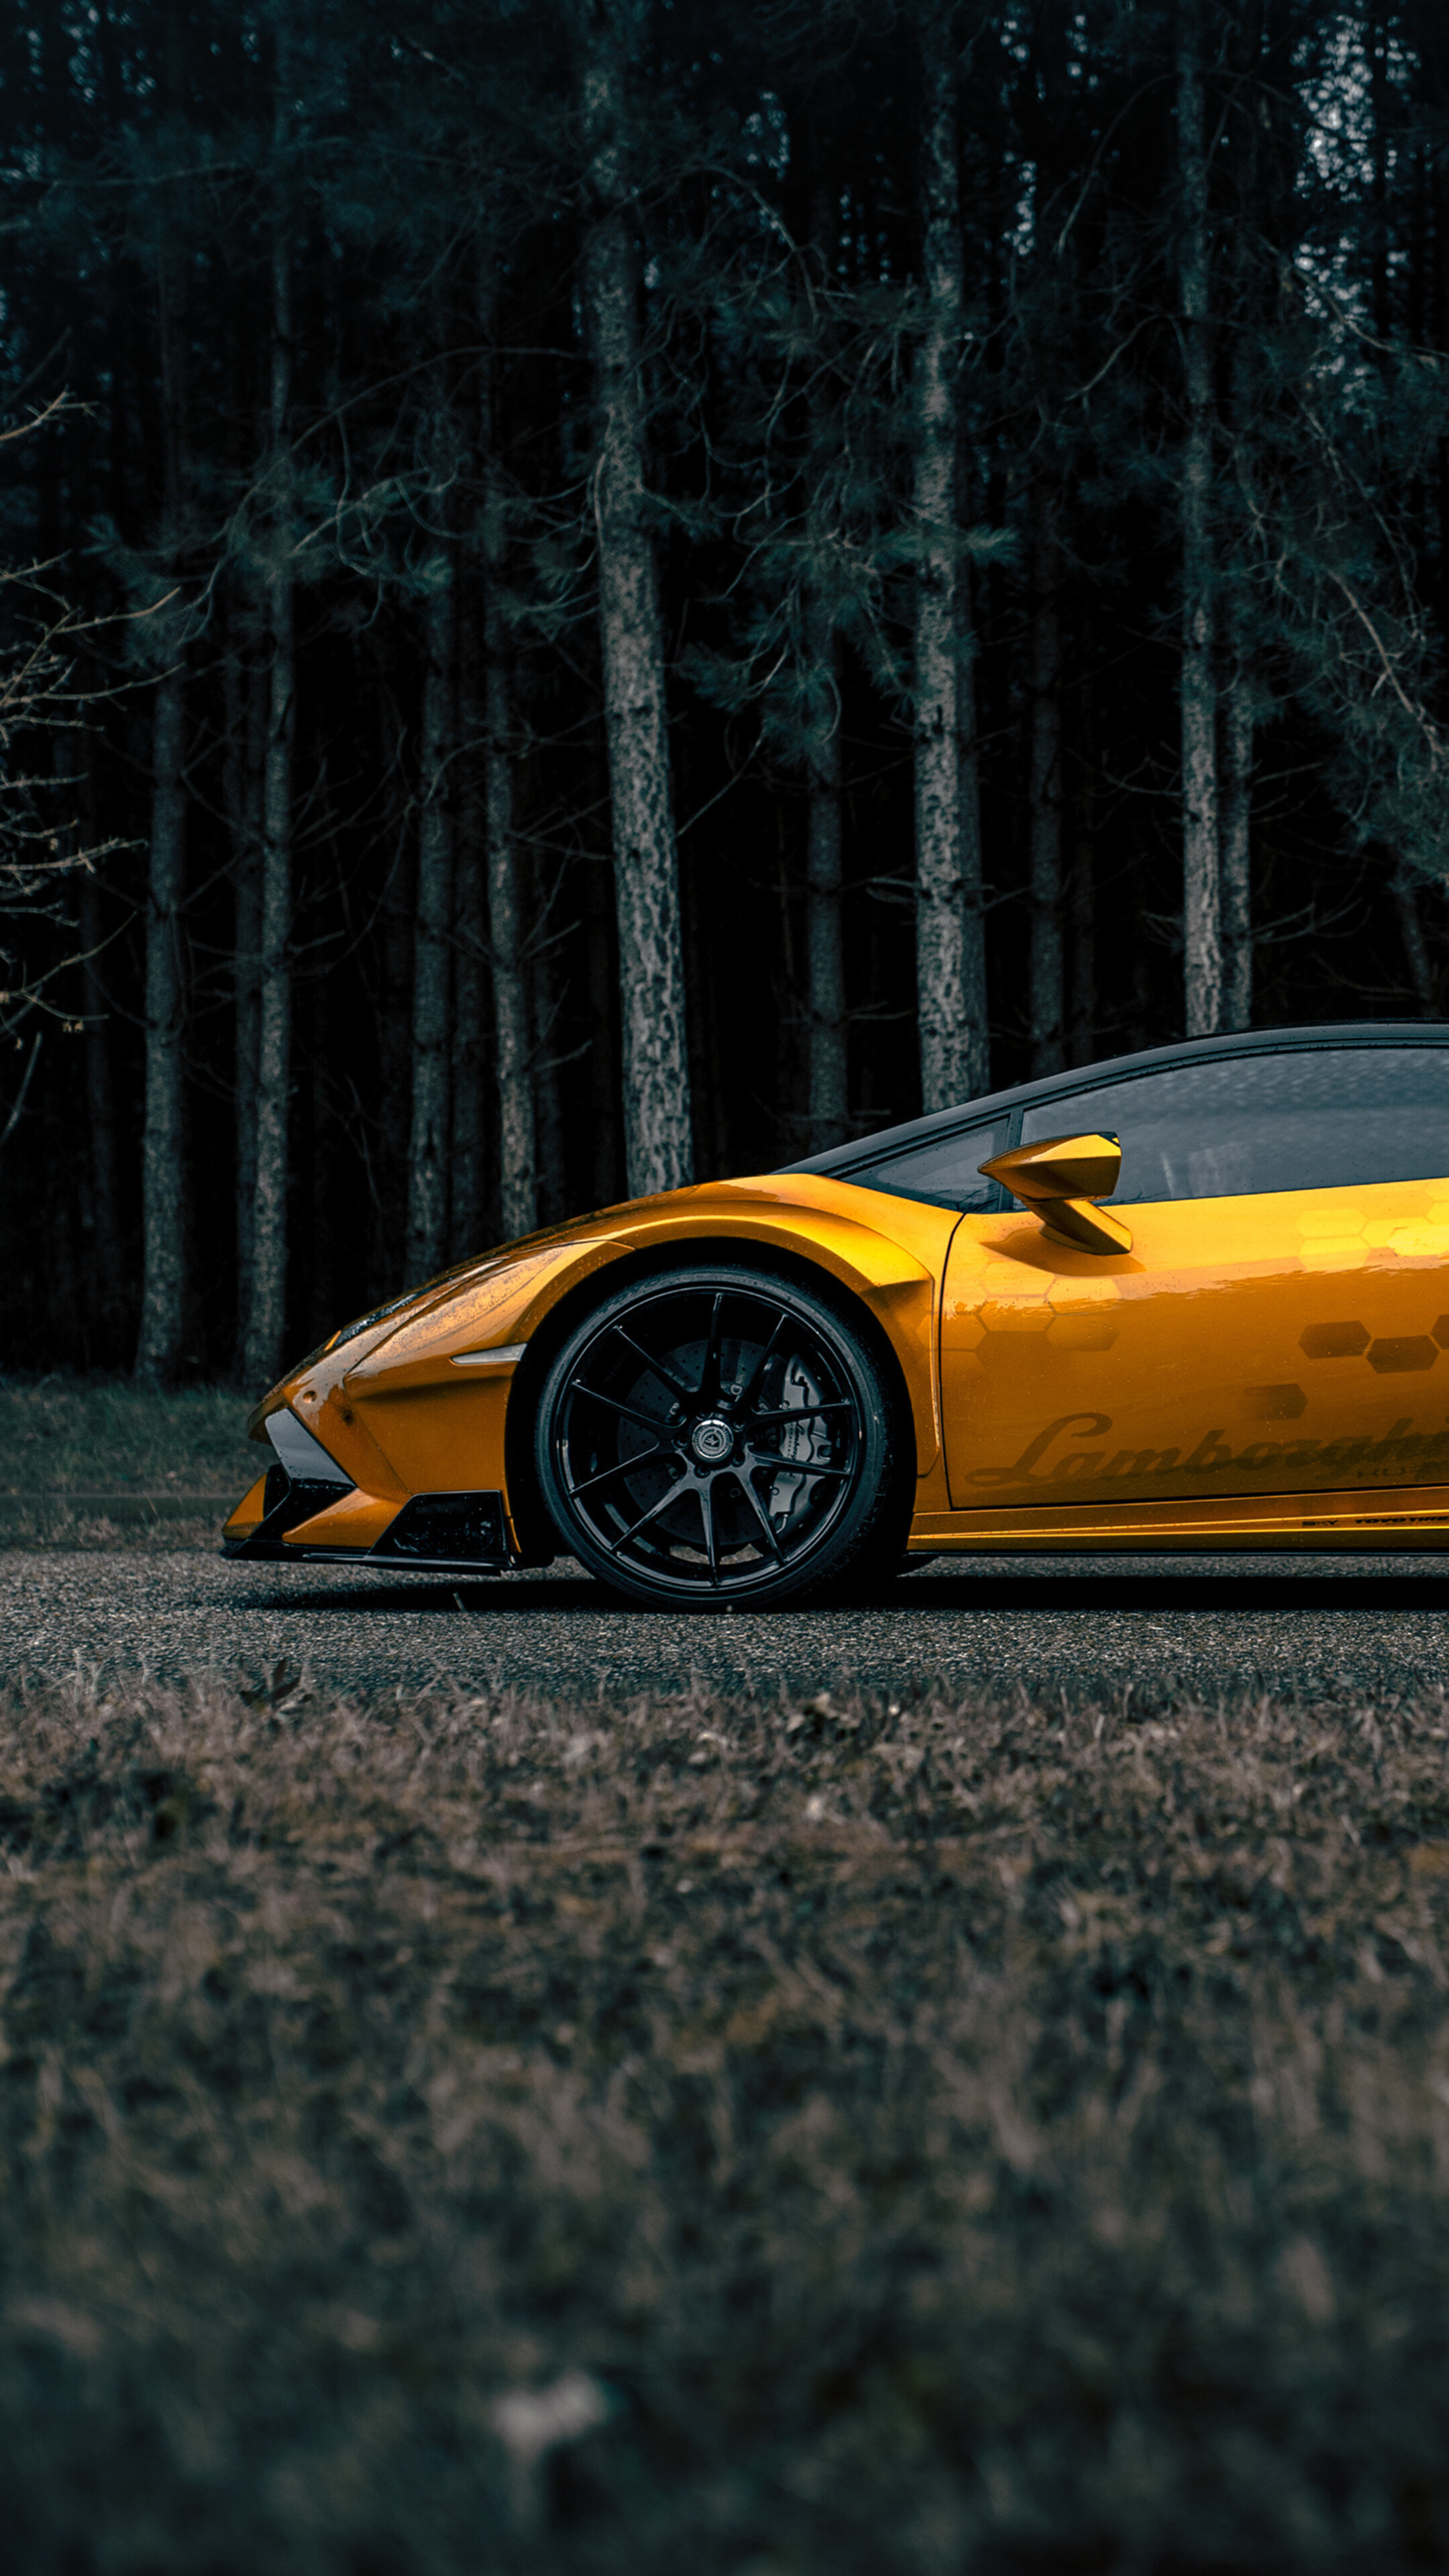 Lamborghini wallpapers 1080P, 2K, 4K, 5K HD wallpapers free download |  Wallpaper Flare